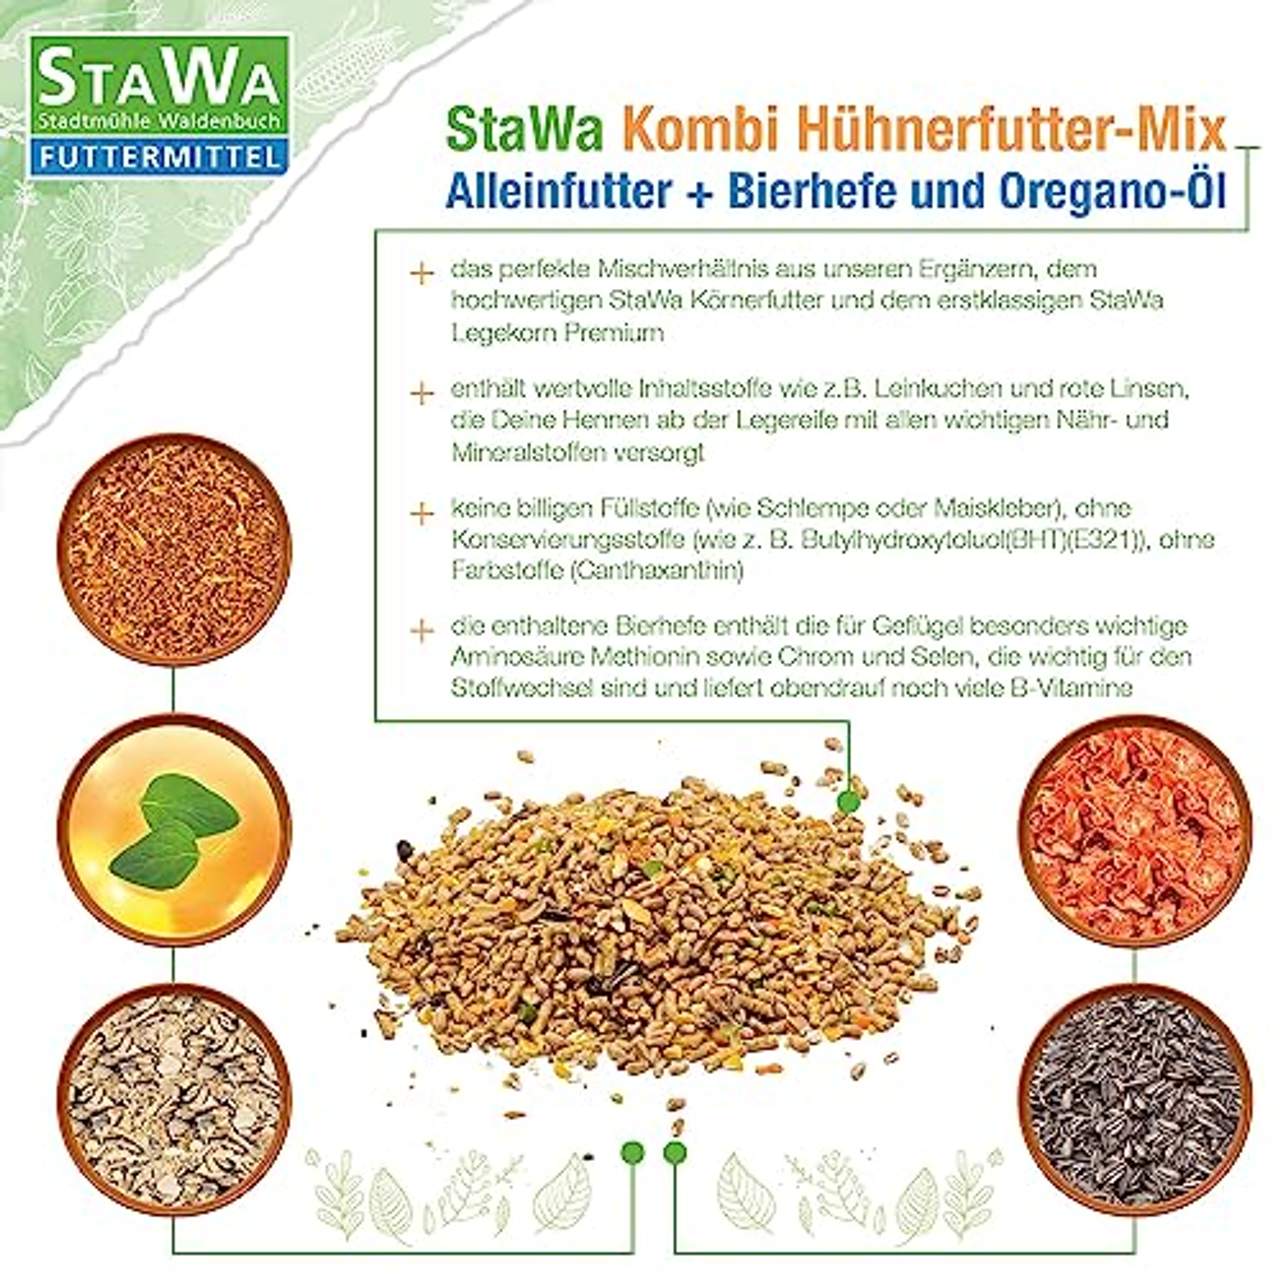 StaWa Kombi Hühnerfutter-Mix 25 kg